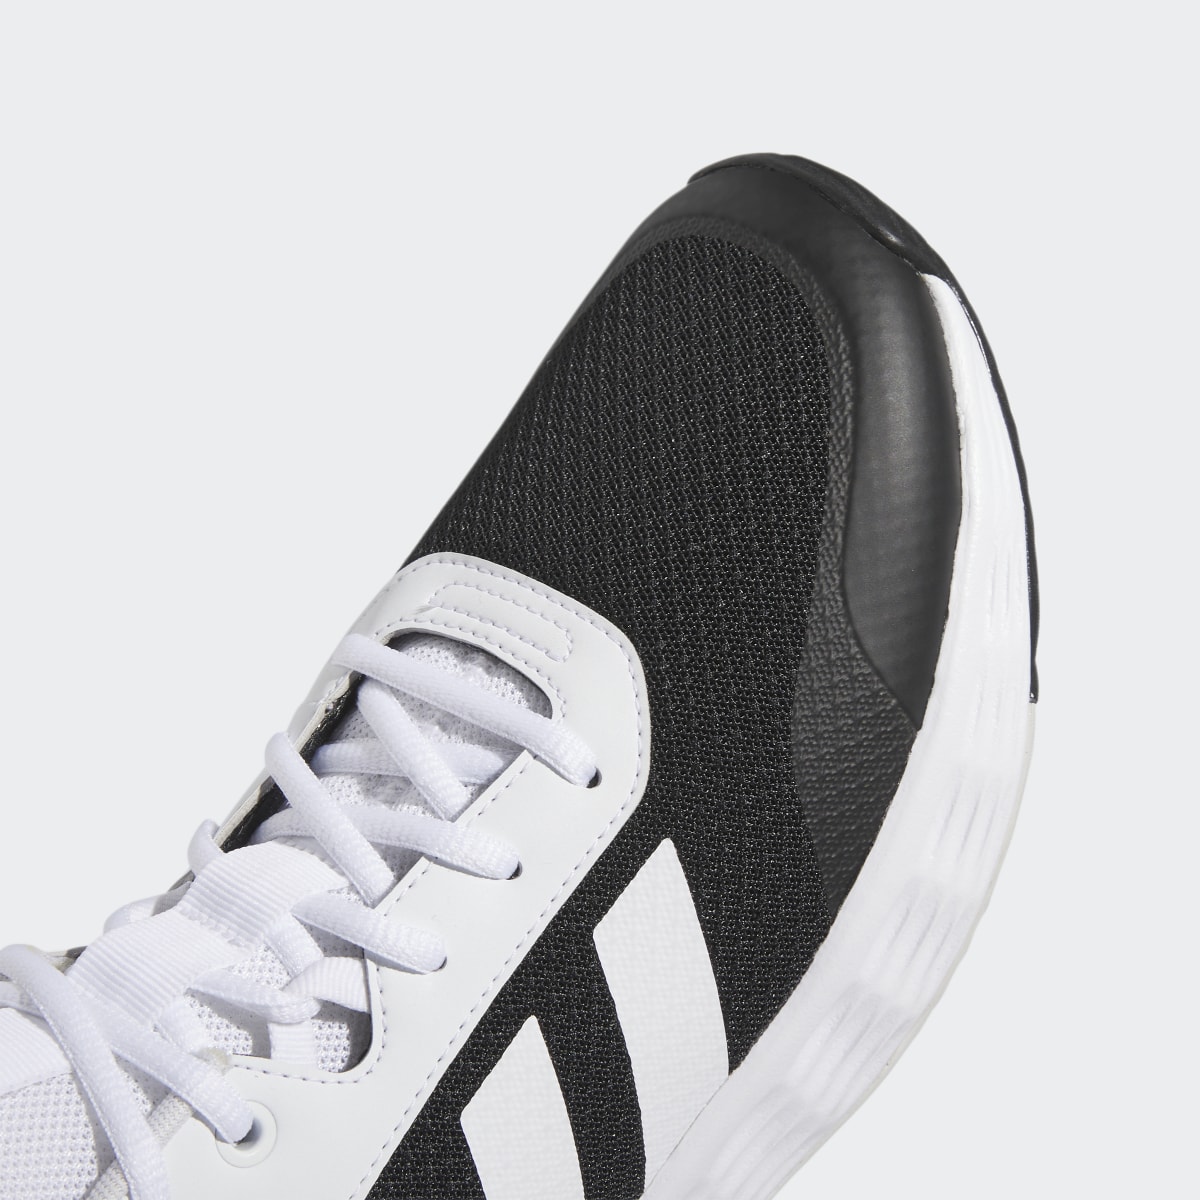 Adidas Ownthegame Ayakkabı. 9